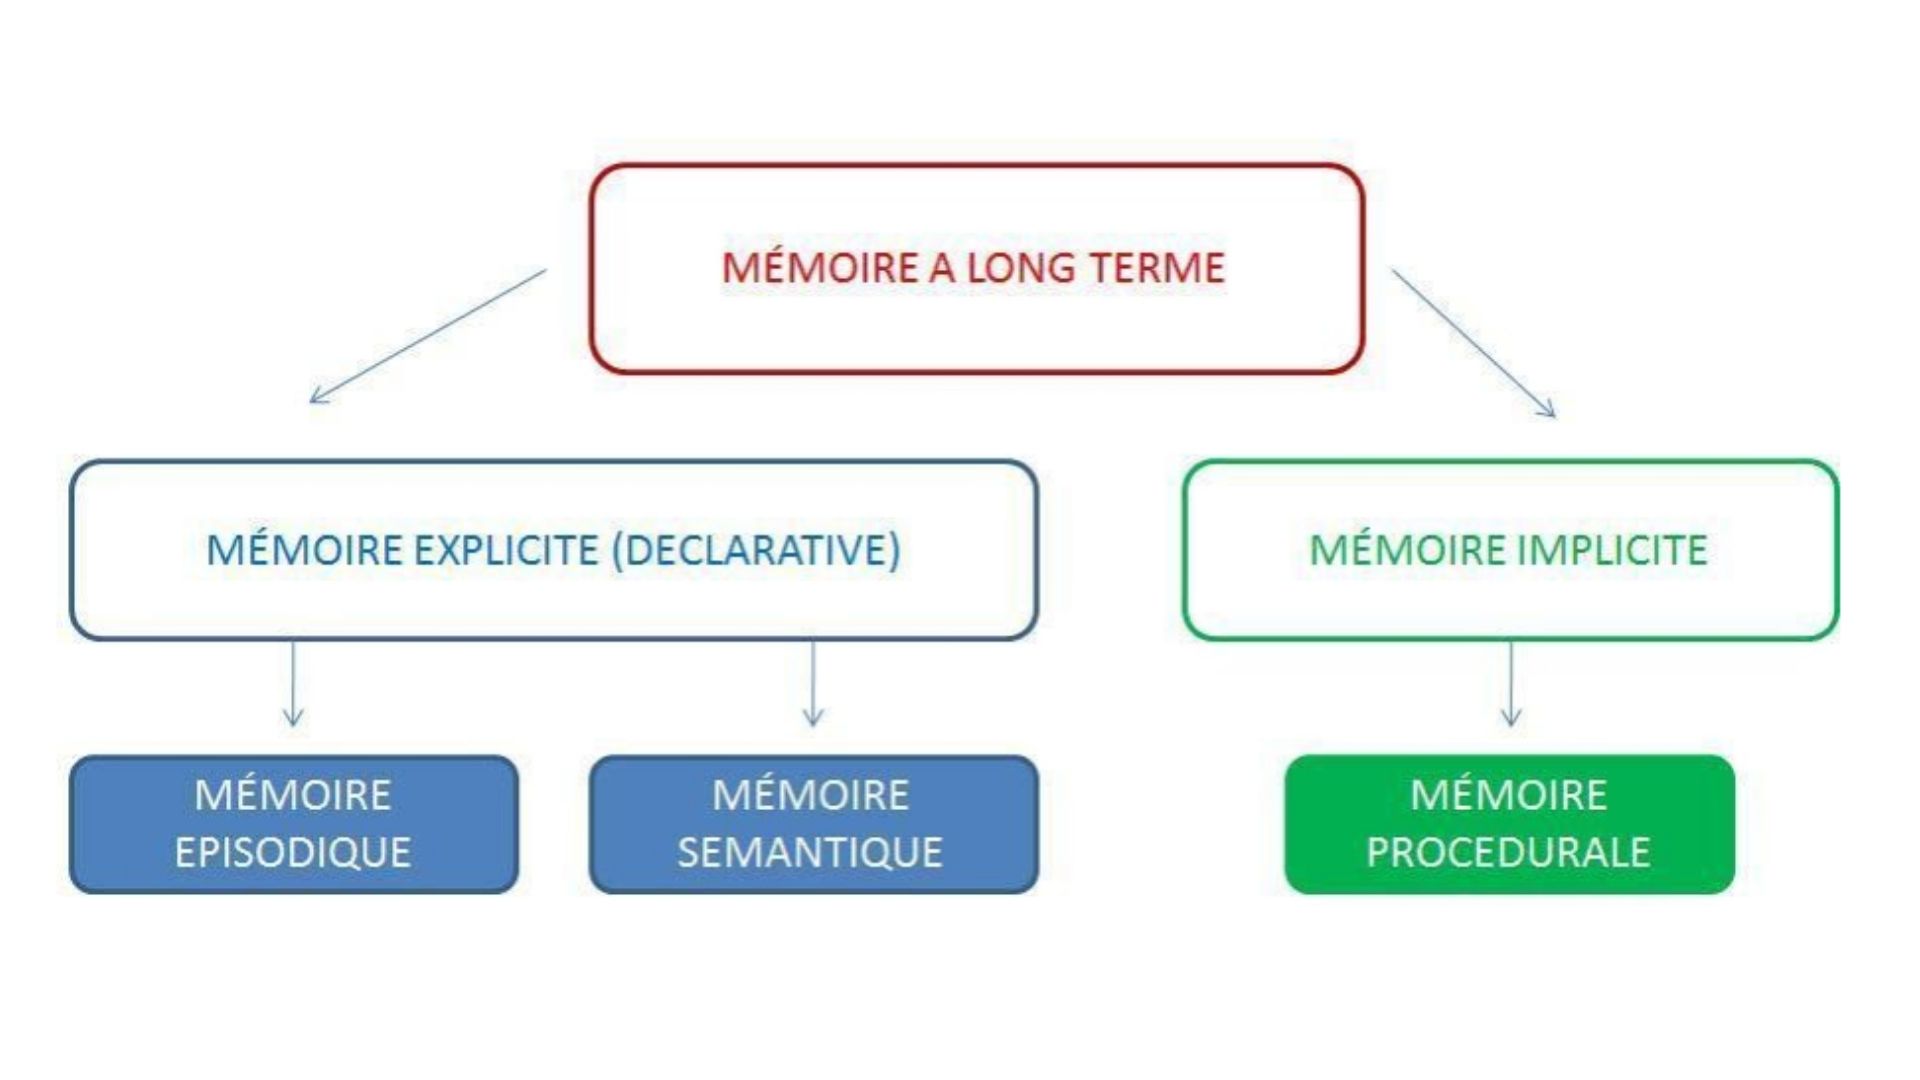 schéma descriptif des différents types de mémoire